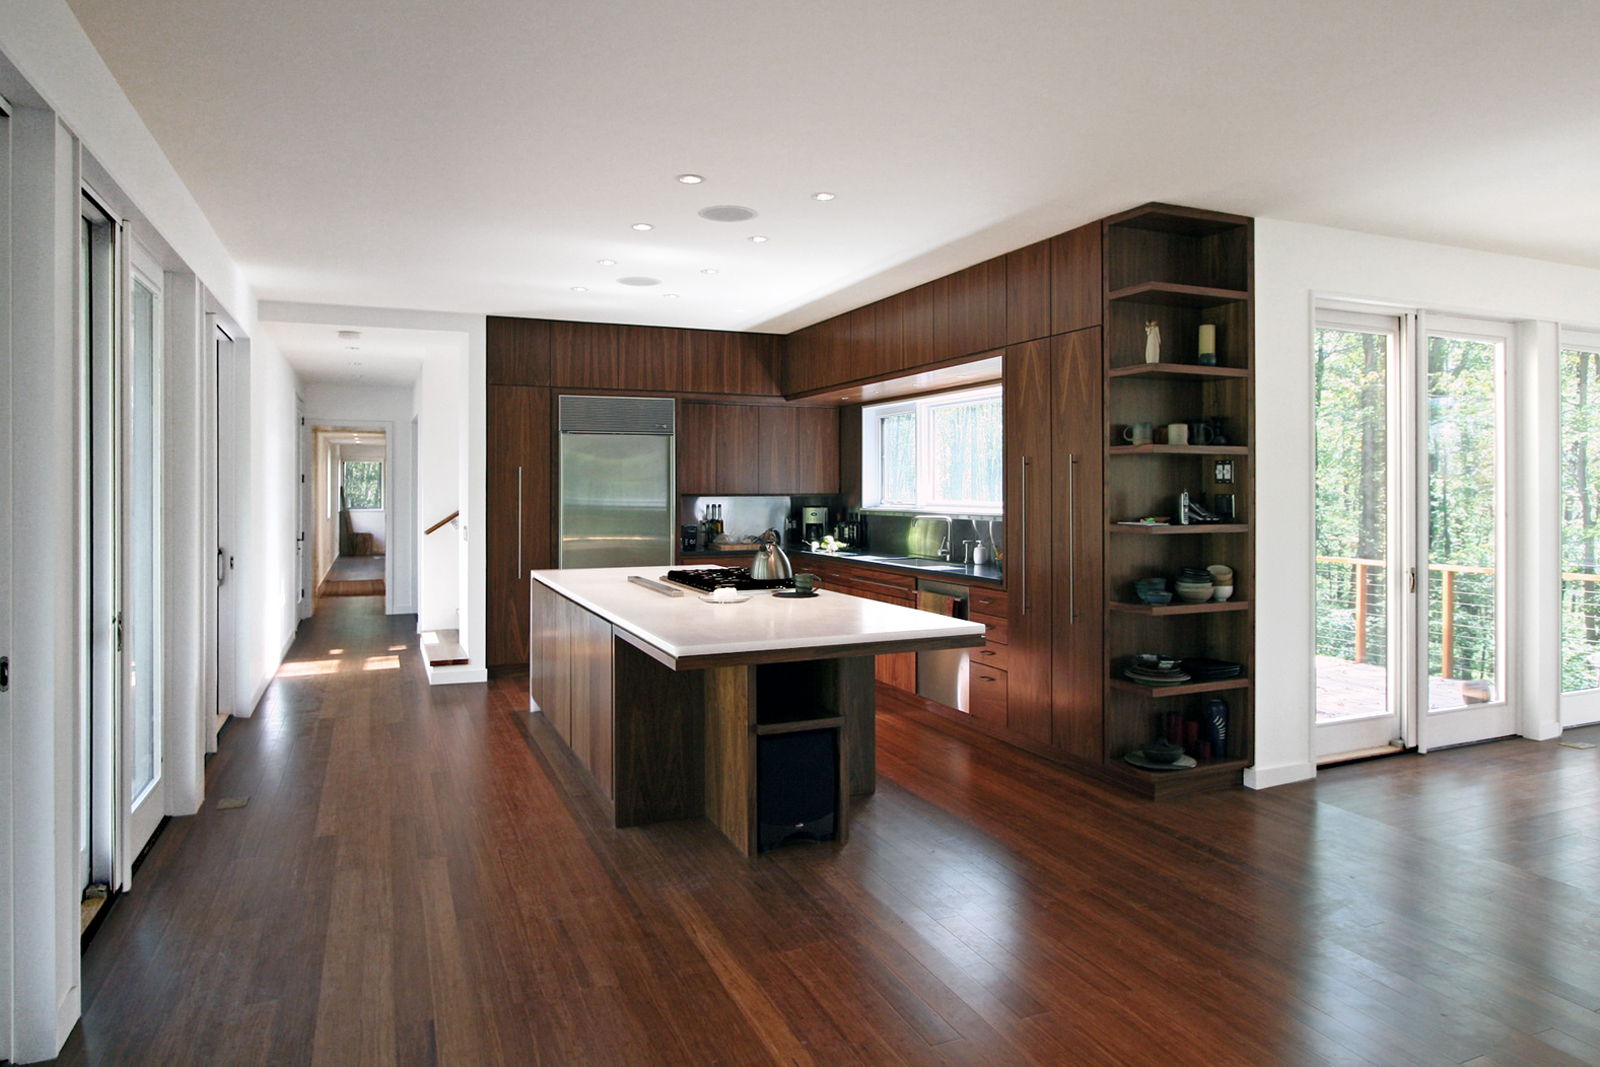 res4-resolution-4-architecture-modern-modular-house-prefab-harmony-hill-interior-kitchen-island-millwork.jpg